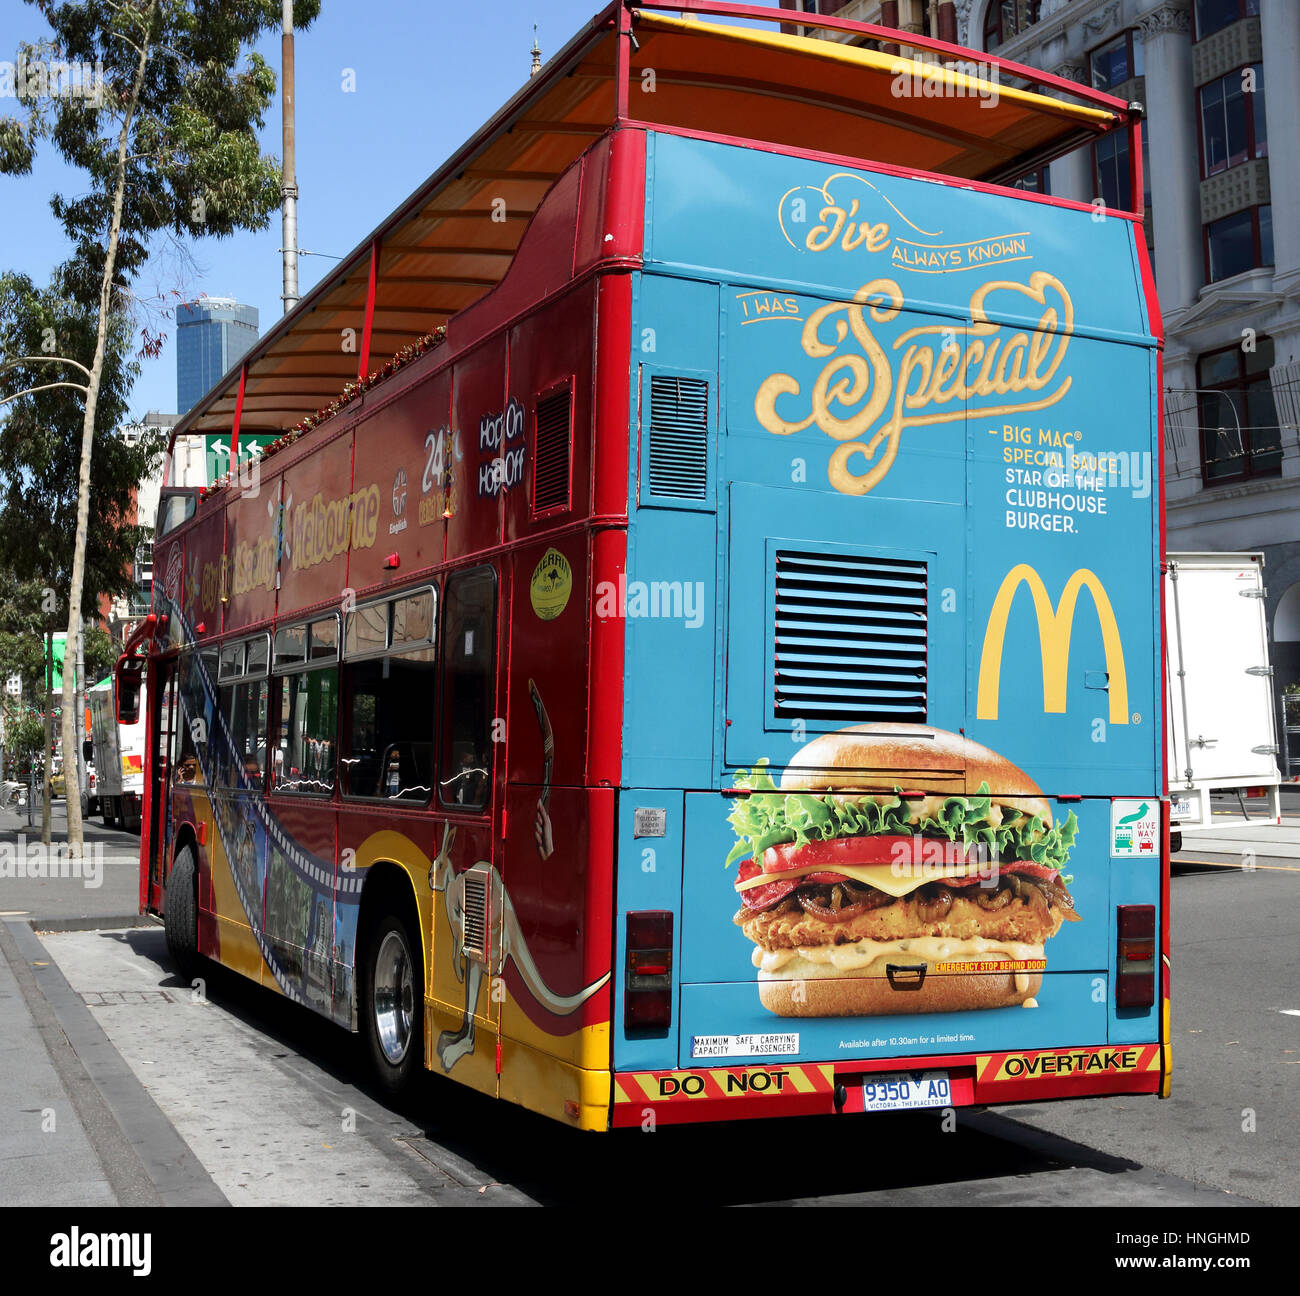 La publicité McDonald's australienne à l'arrière du bus de tourisme de Melbourne garée près de Federation Square Melbourne Australie Banque D'Images